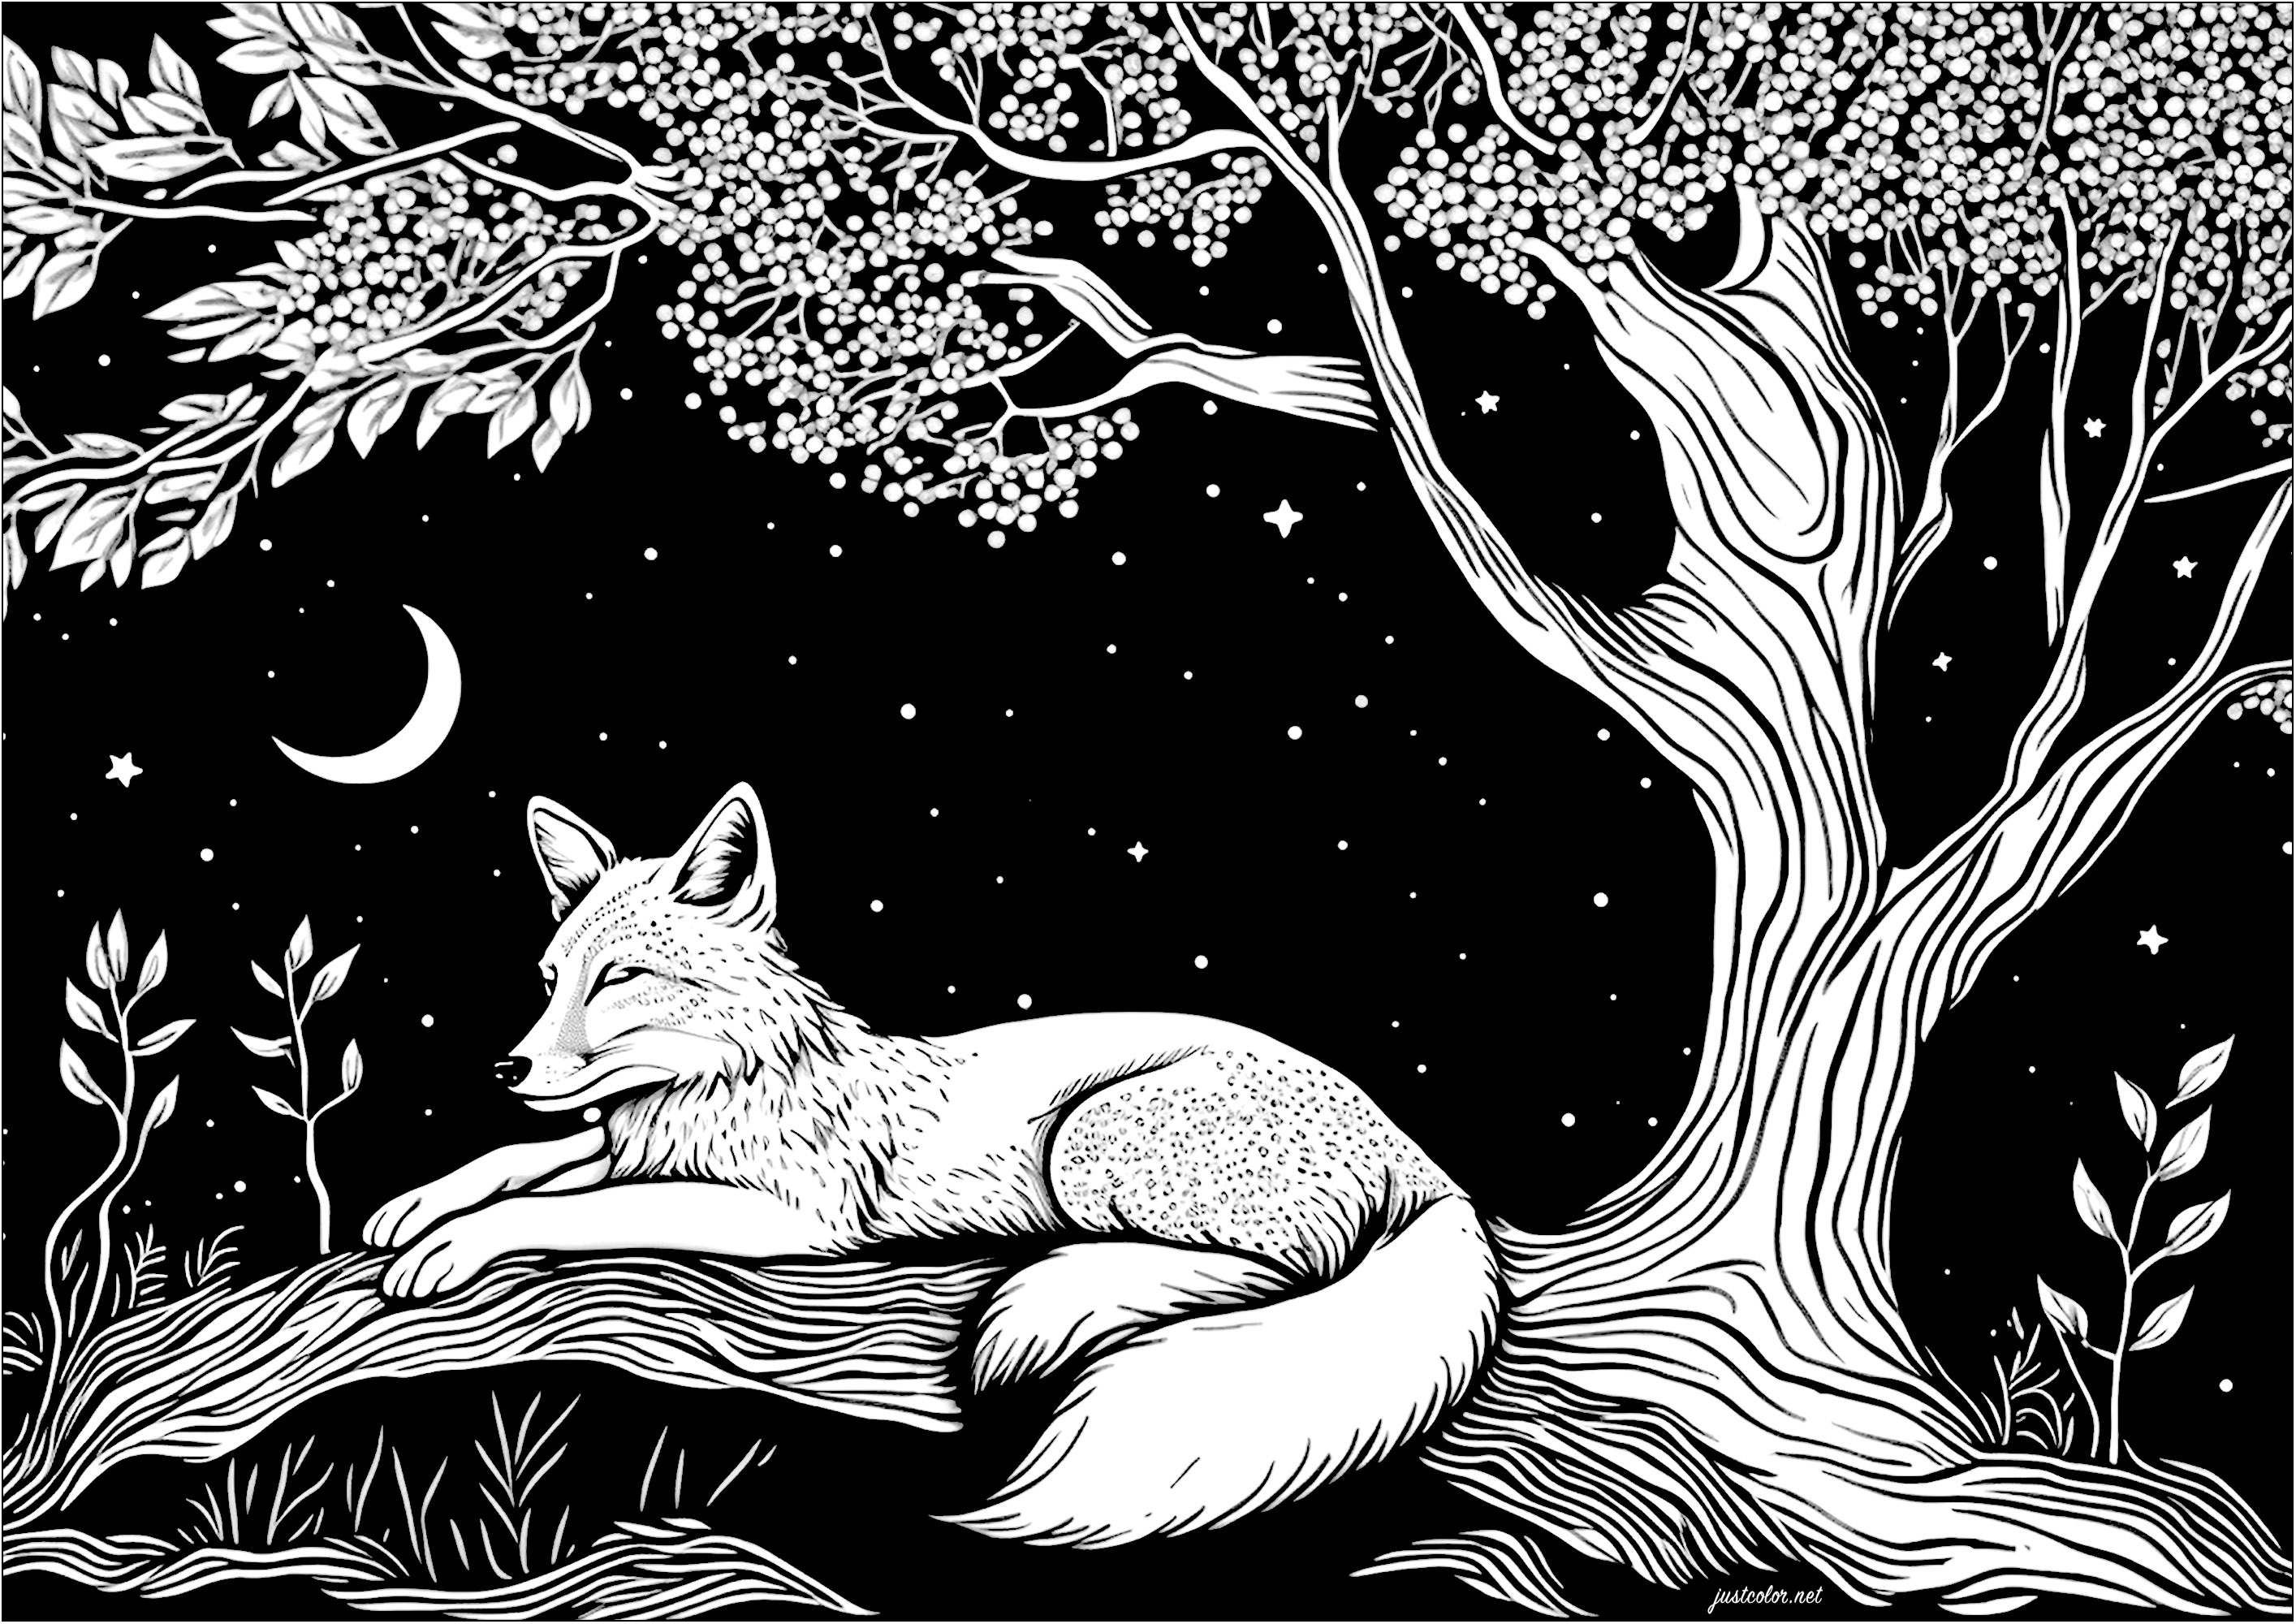 Colorir uma raposa a dormir ao luar. É uma noite clara e calma, e uma raposa pacífica está a dormir debaixo de uma árvore e das estrelas. Está rodeada por um céu estrelado e um quarto de lua.